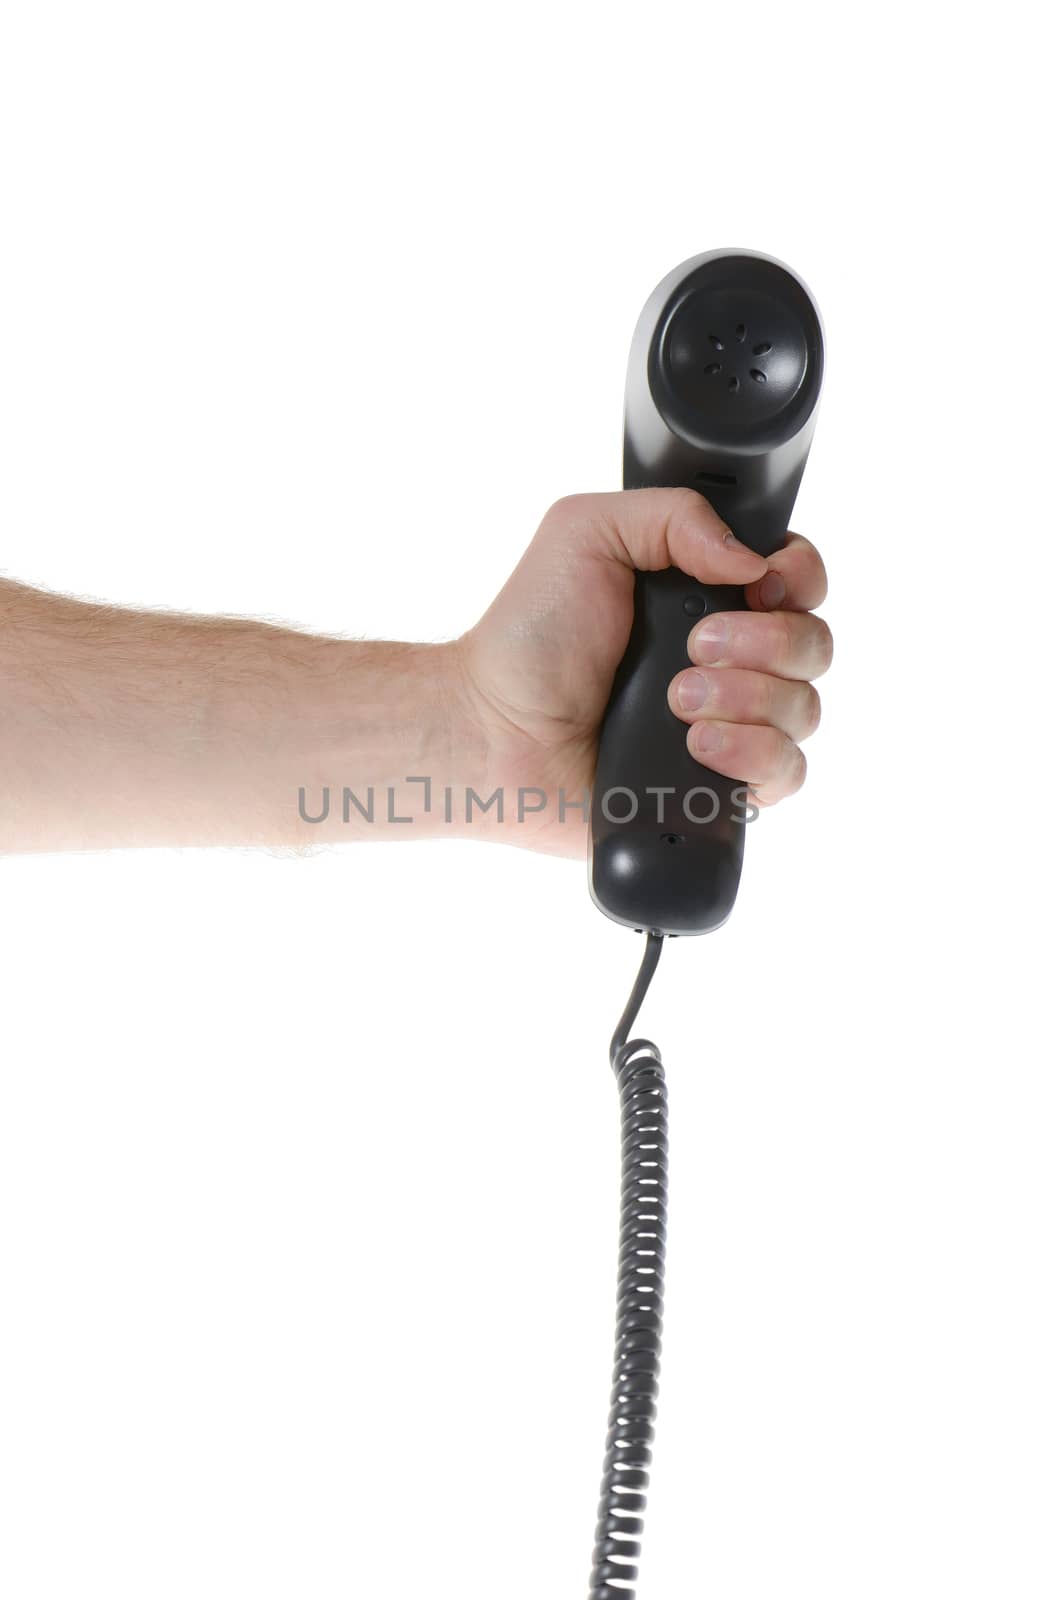 telephone handset by hyrons